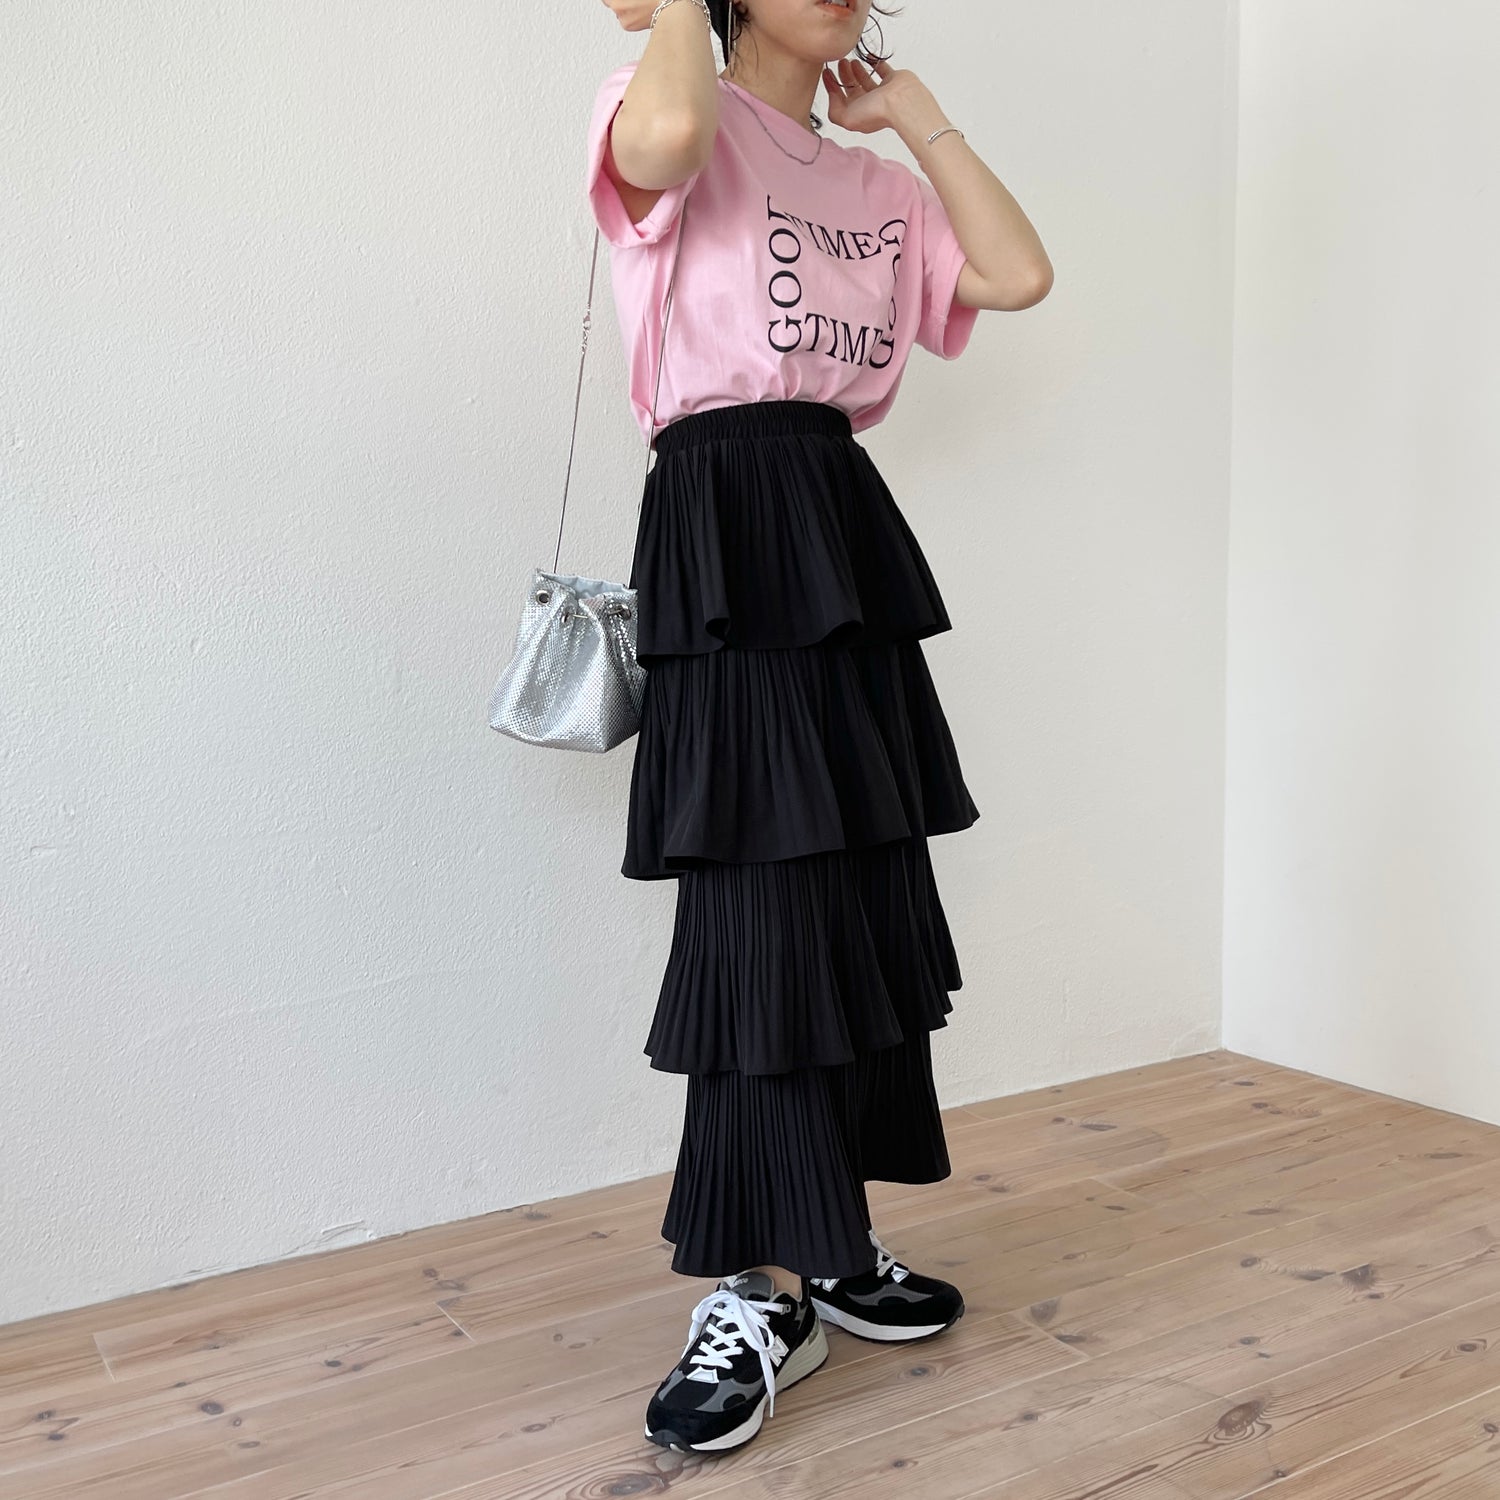 flamenco skirt / black